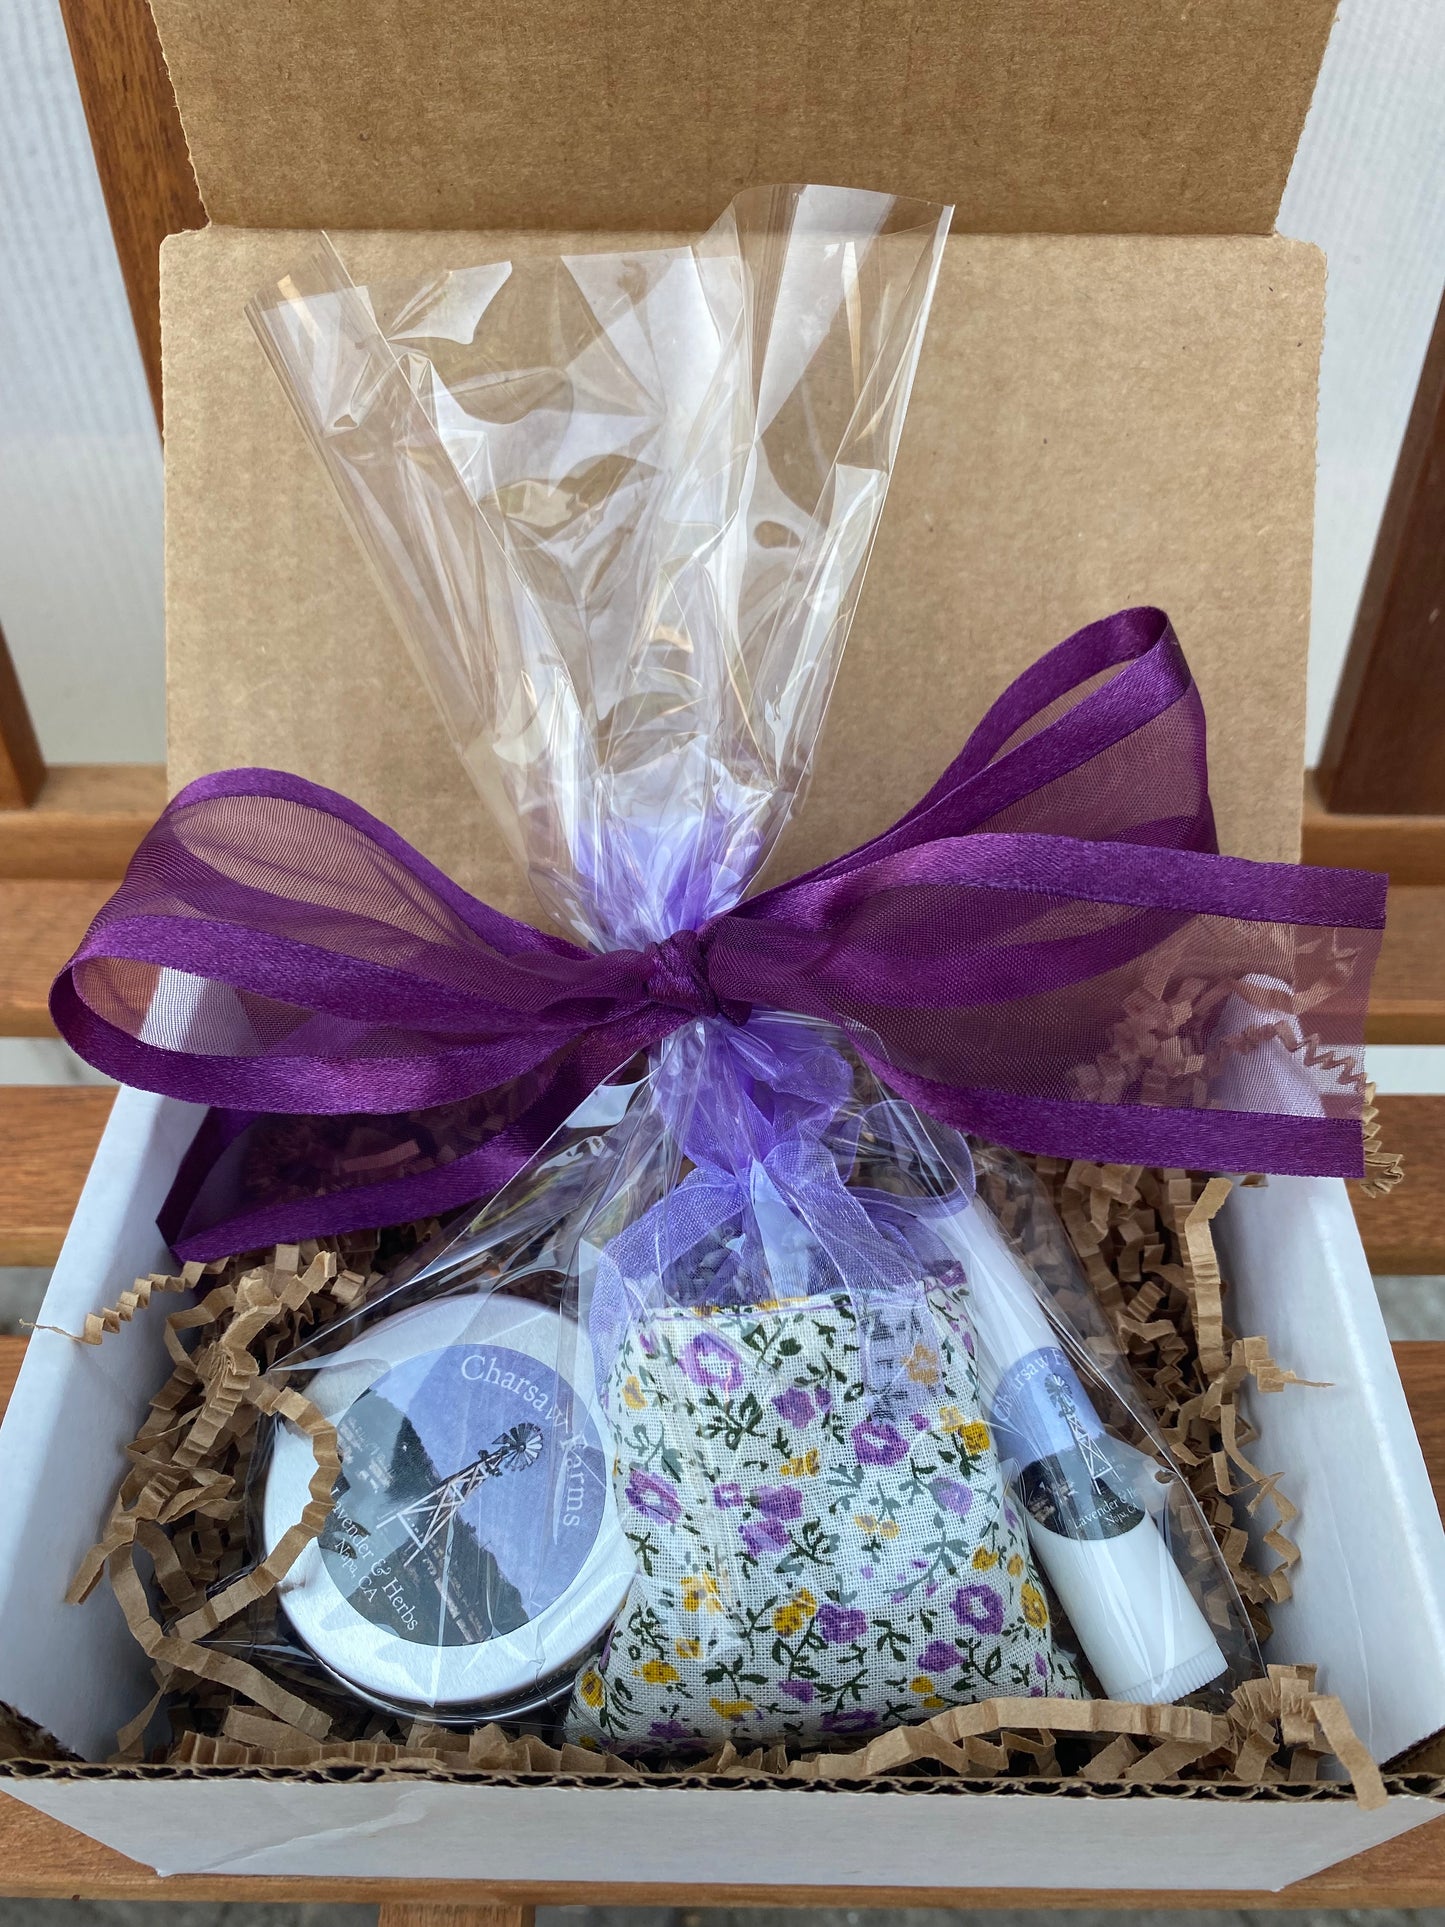 Lavender "Pamper Me" Gift Set